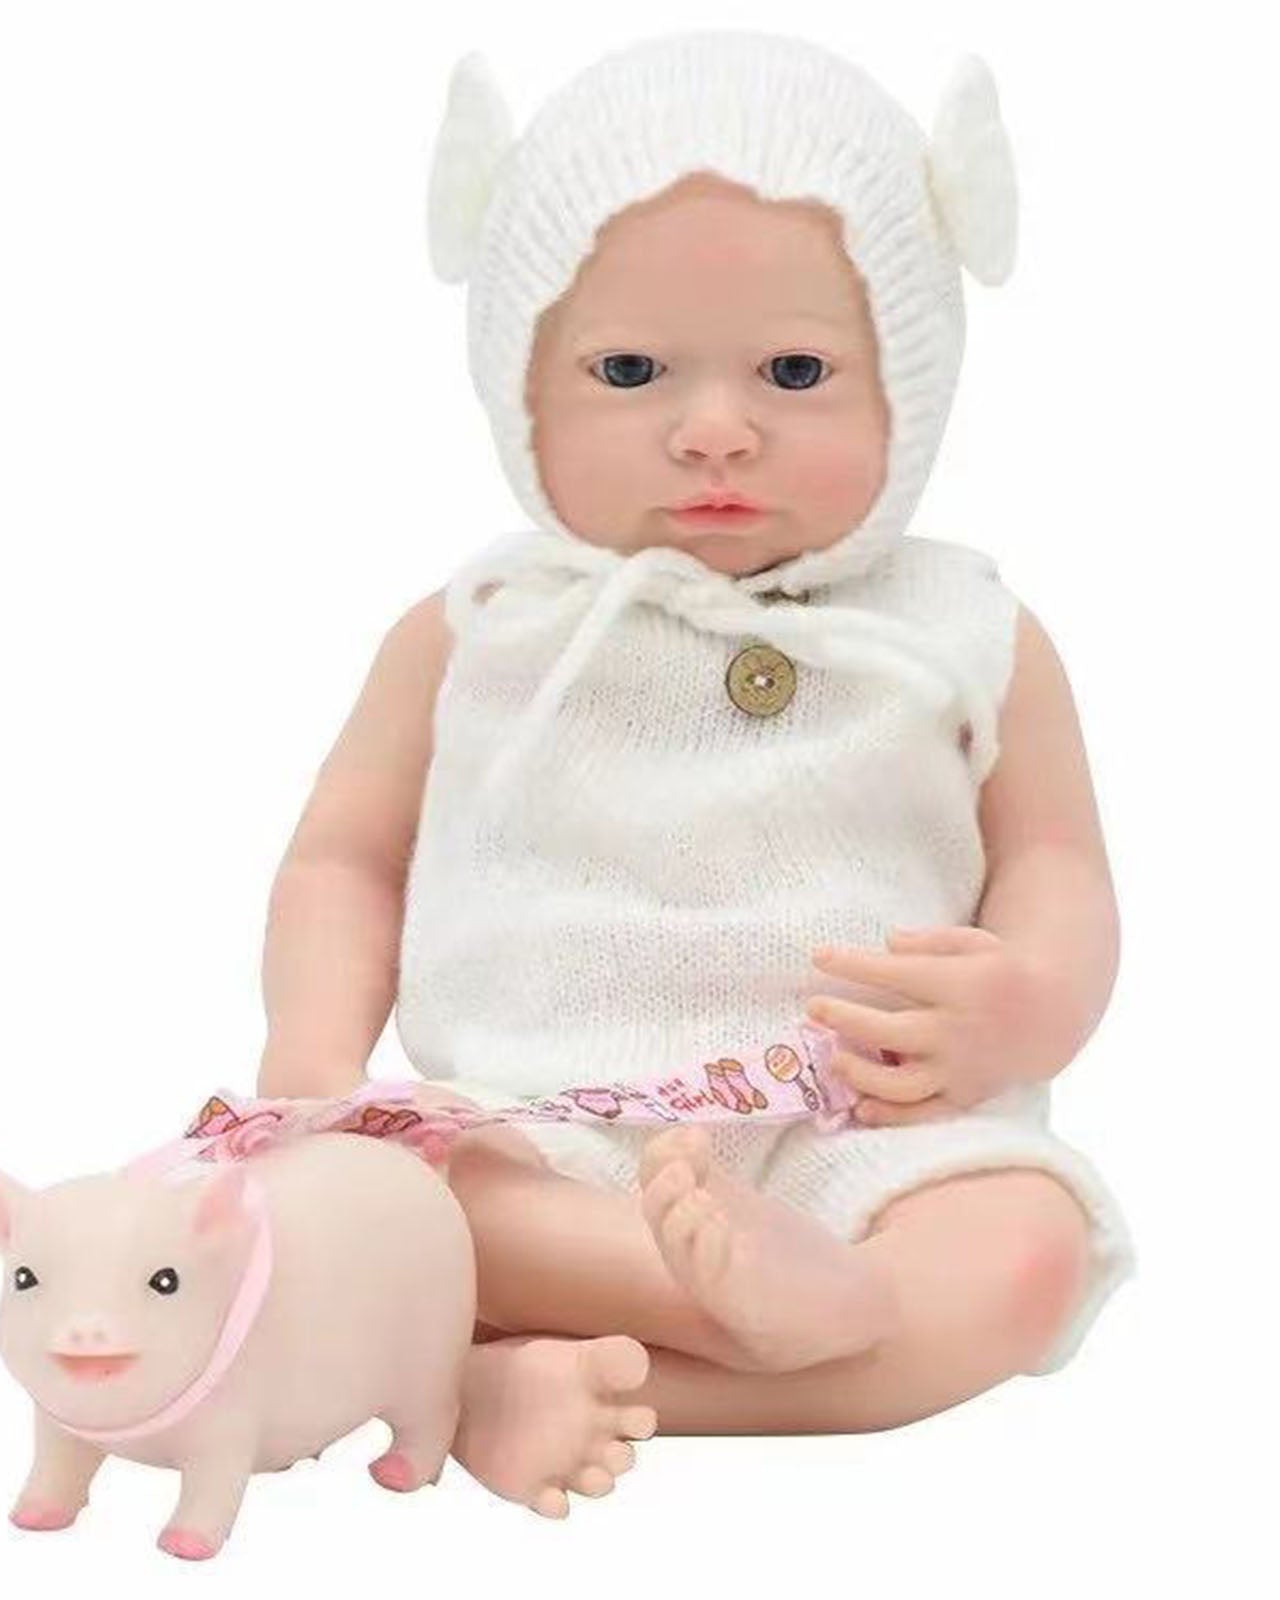 FULL Body SOFT Ecoflex SILICONE Baby GIRL DOLL - AMELIA - All Reborn Babies